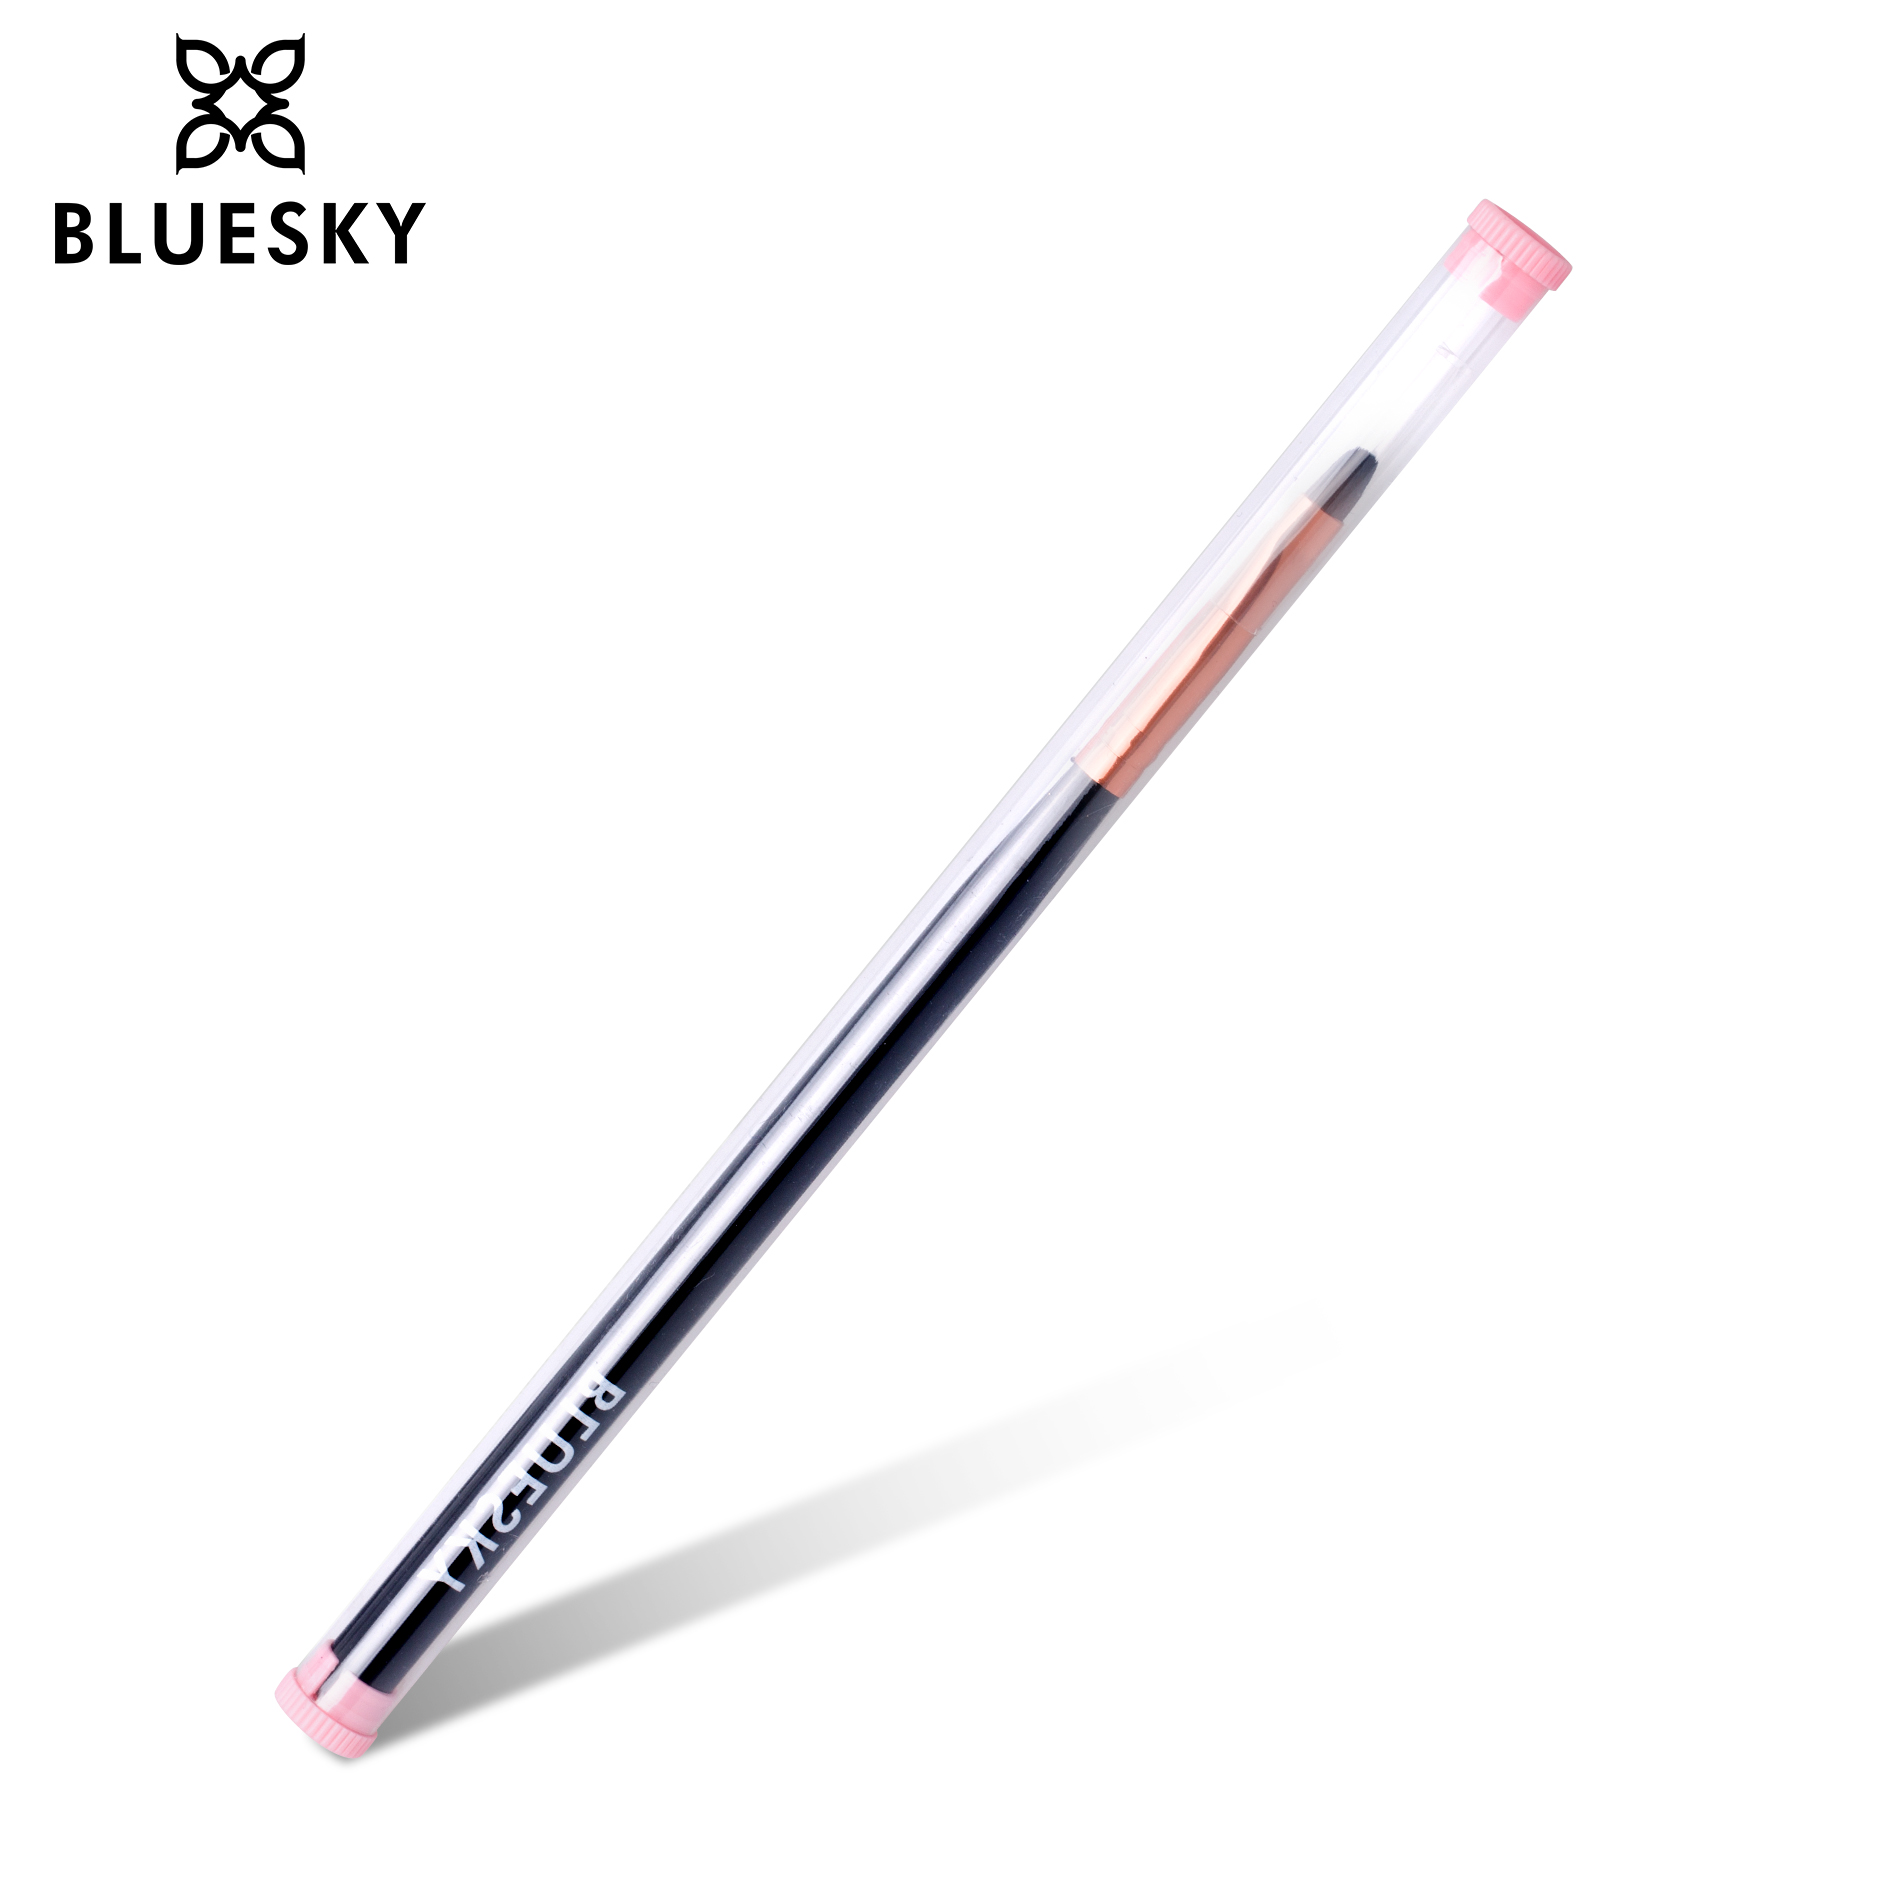 blueskygel.gr Brushes Pen Brush (Single)